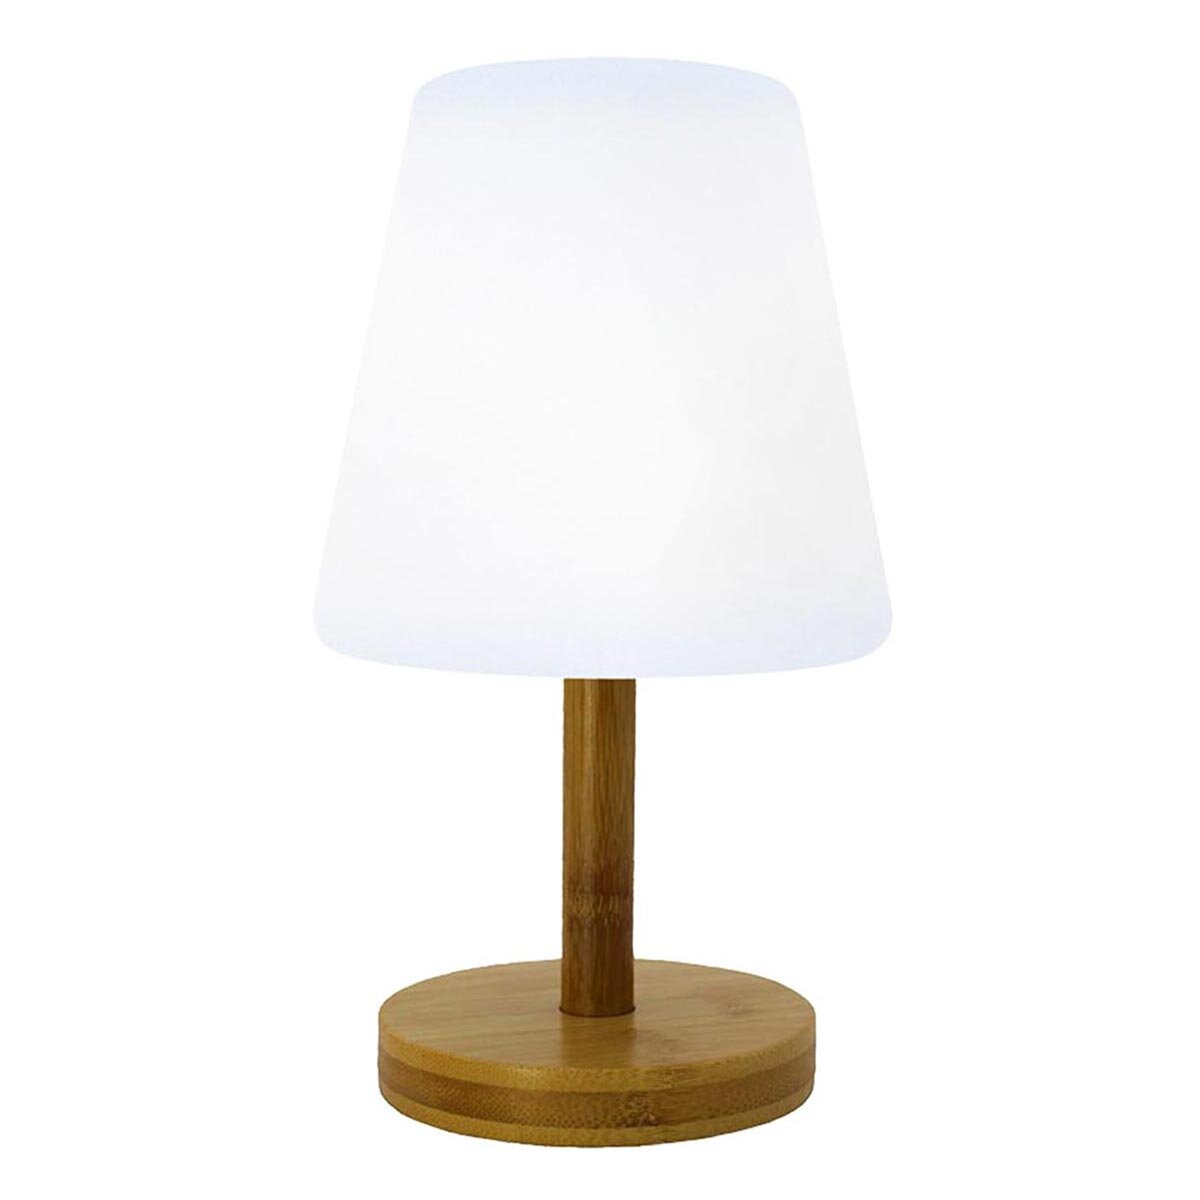 Lampe de table sans fil LED STANDY MINI Vert Acier H25CM